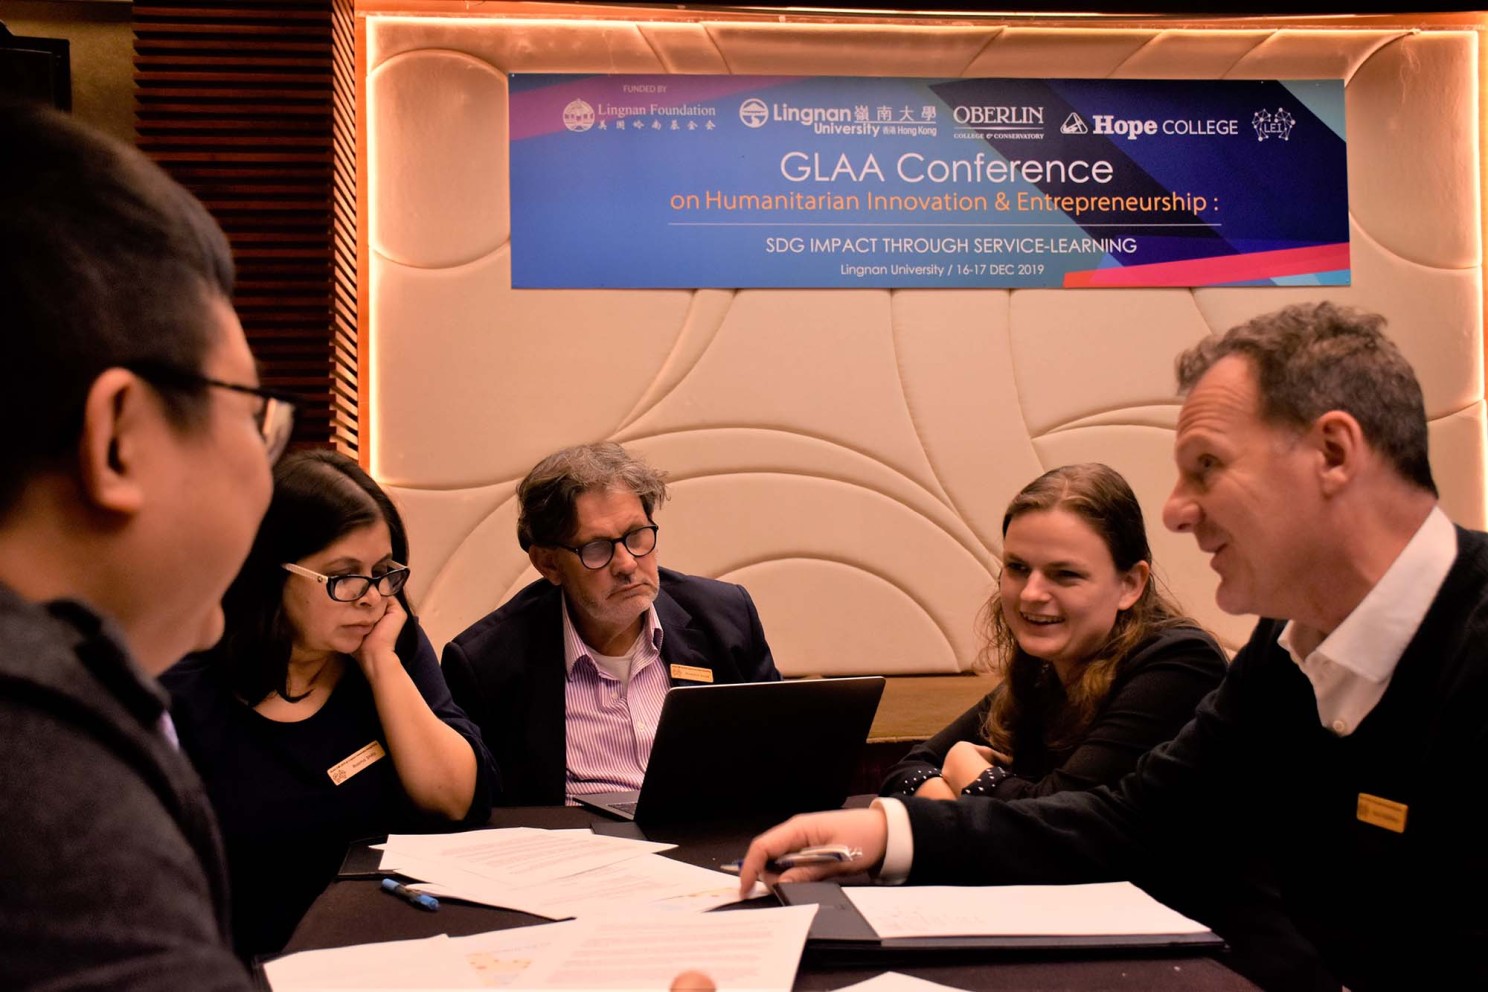 超过40名代表出席GLAA年会探讨人道主义创新及创业议题